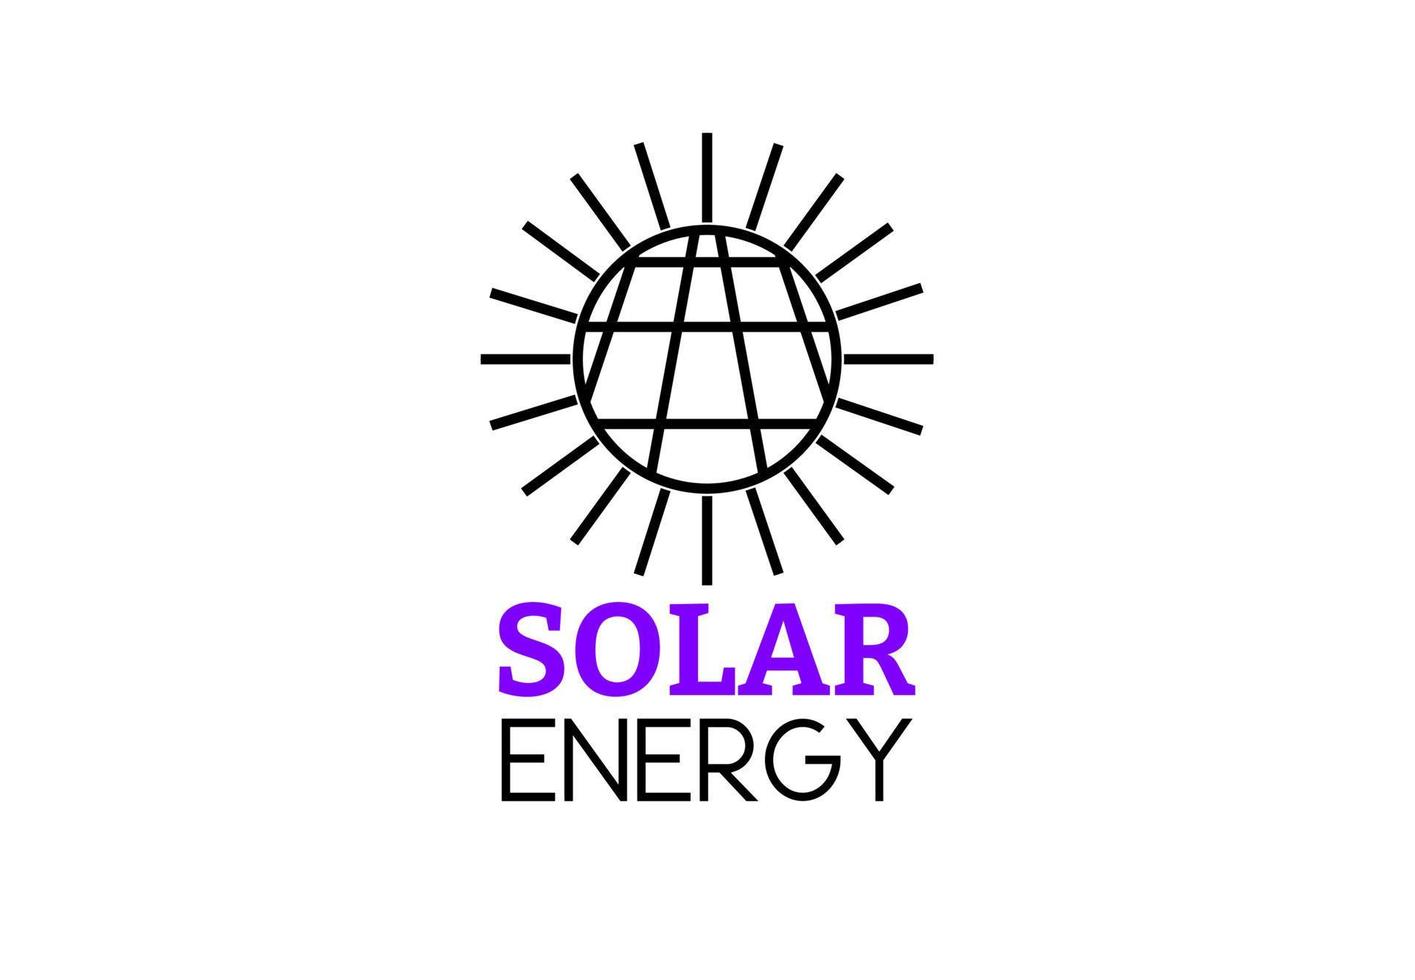 delinear o logotipo de energia solar isolado no fundo branco vetor